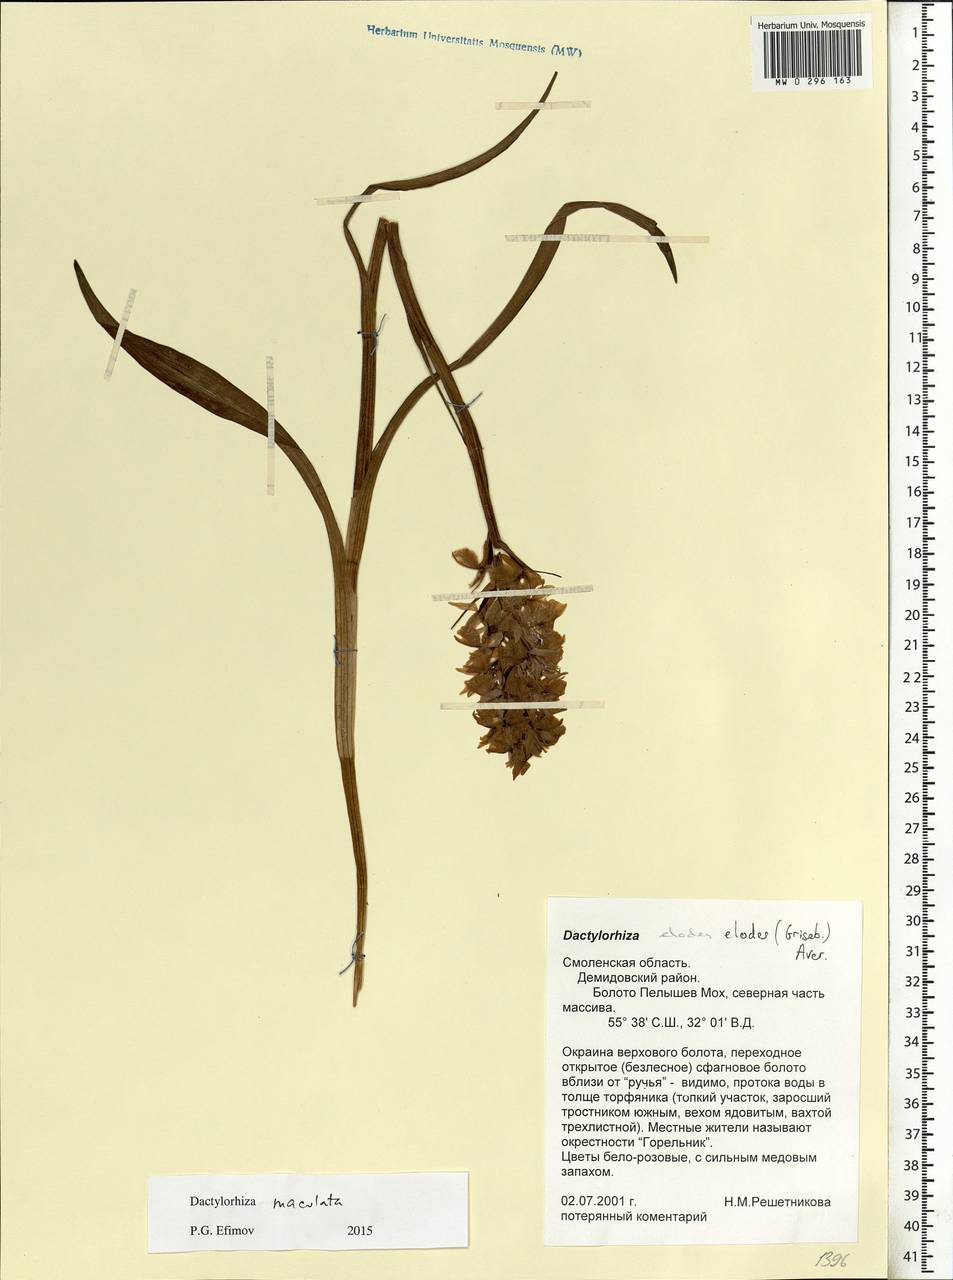 Dactylorhiza maculata (L.) Soó, Eastern Europe, Western region (E3) (Russia)